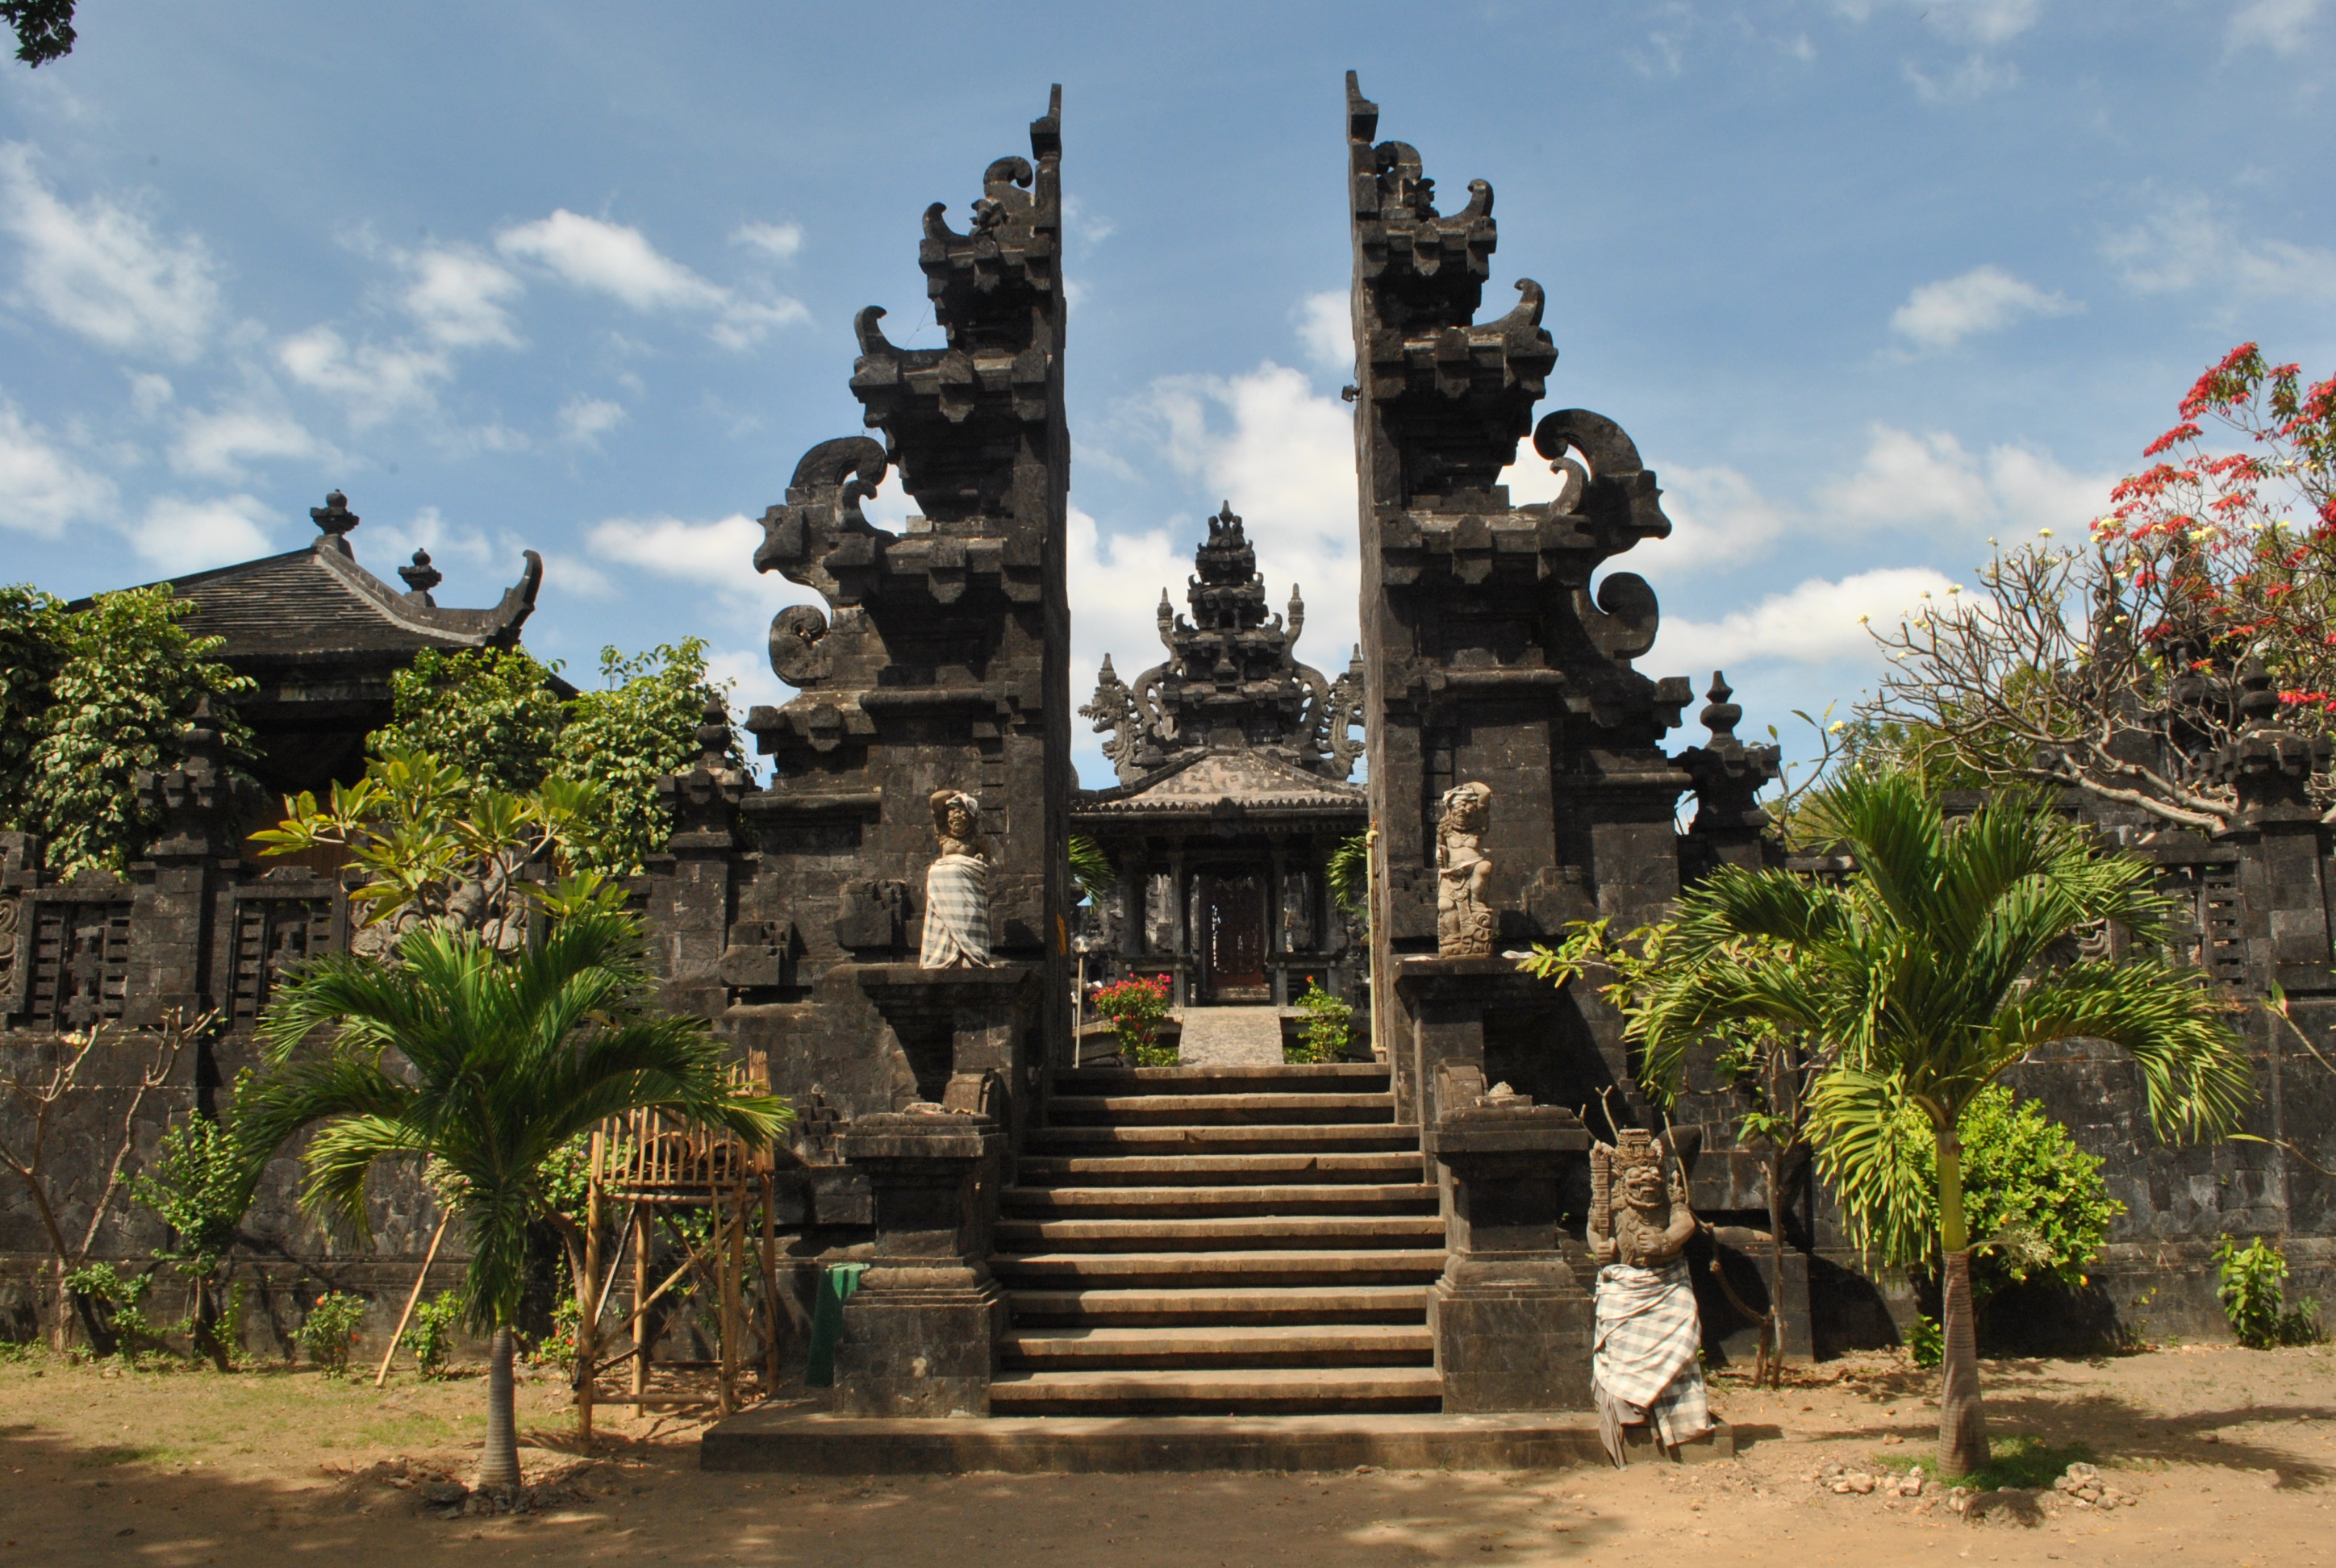 Rumah Adat Gapura Candi Bentar Bali Omong q